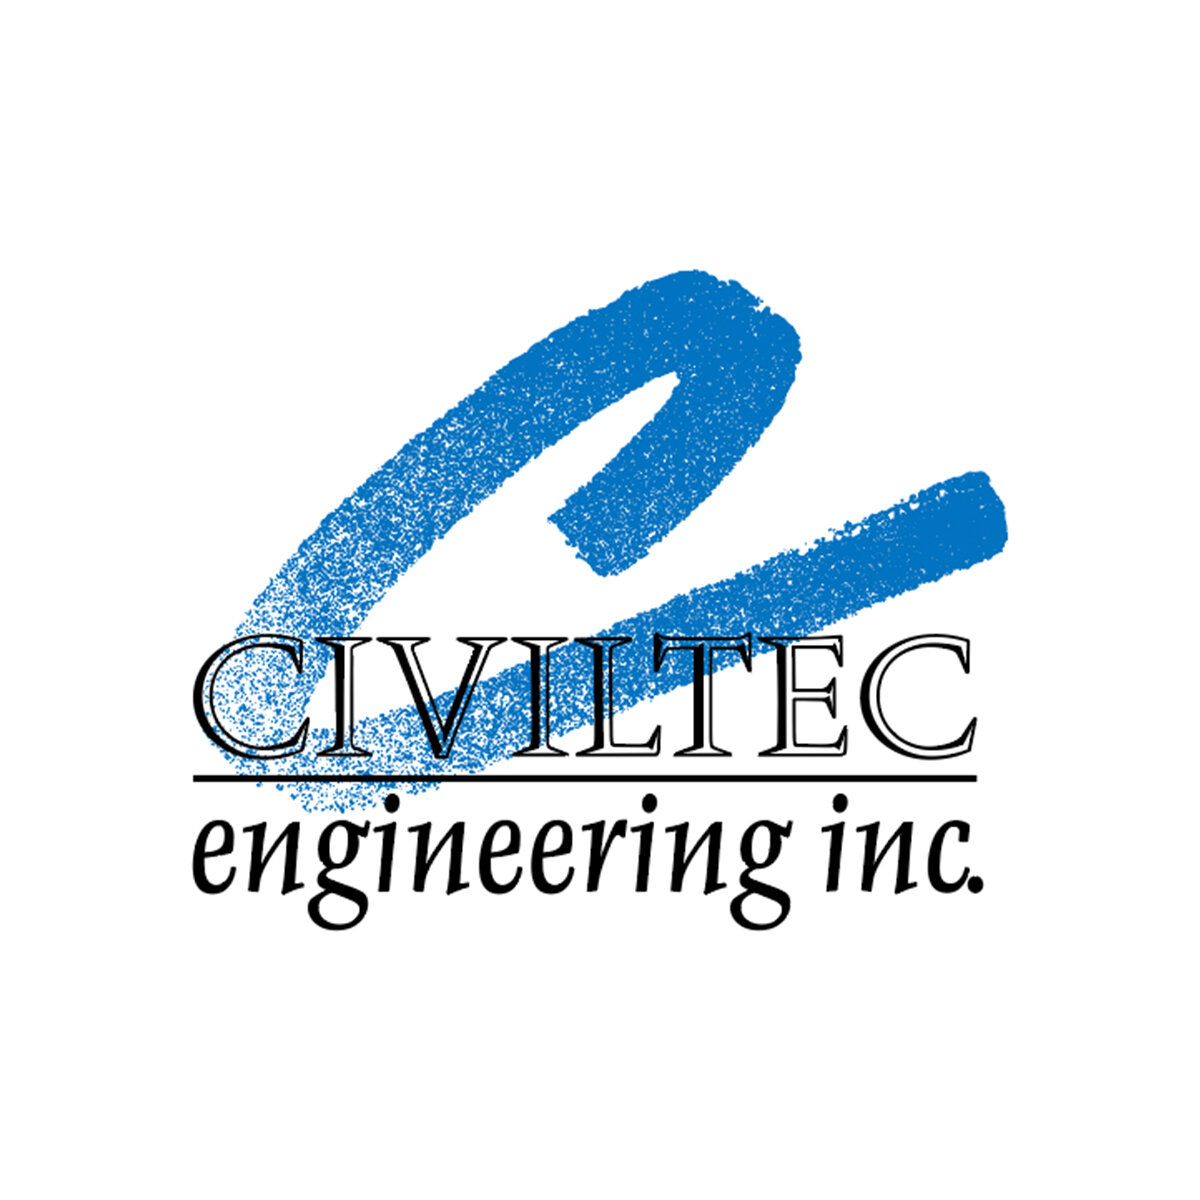 Civiltec logo.jpg